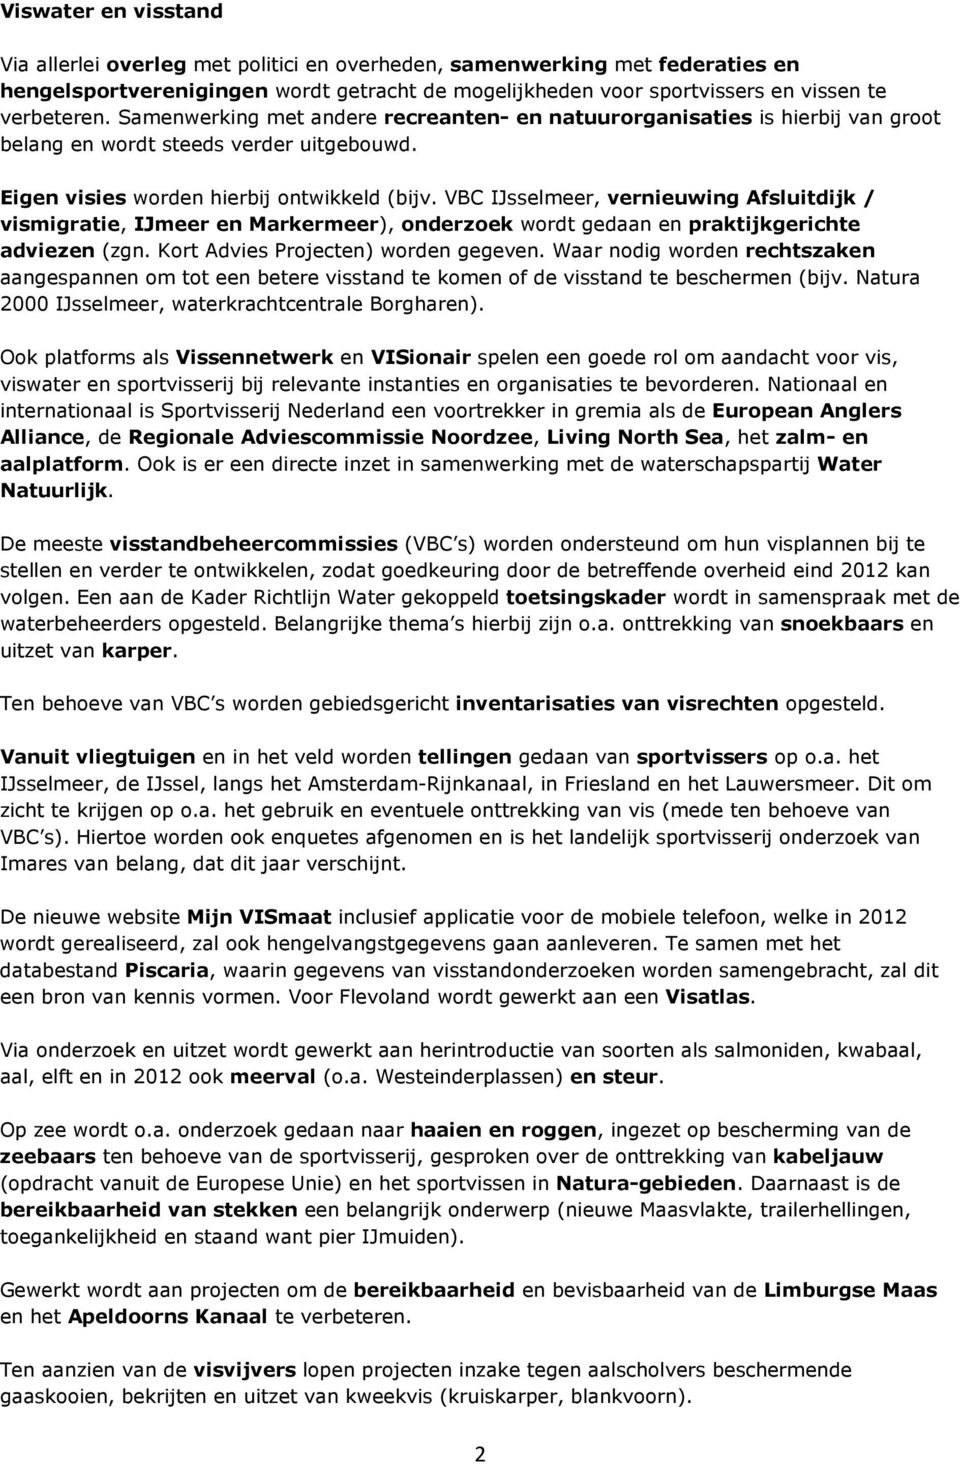 VBC IJsselmeer, vernieuwing Afsluitdijk / vismigratie, IJmeer en Markermeer), onderzoek wordt gedaan en praktijkgerichte adviezen (zgn. Kort Advies Projecten) worden gegeven.